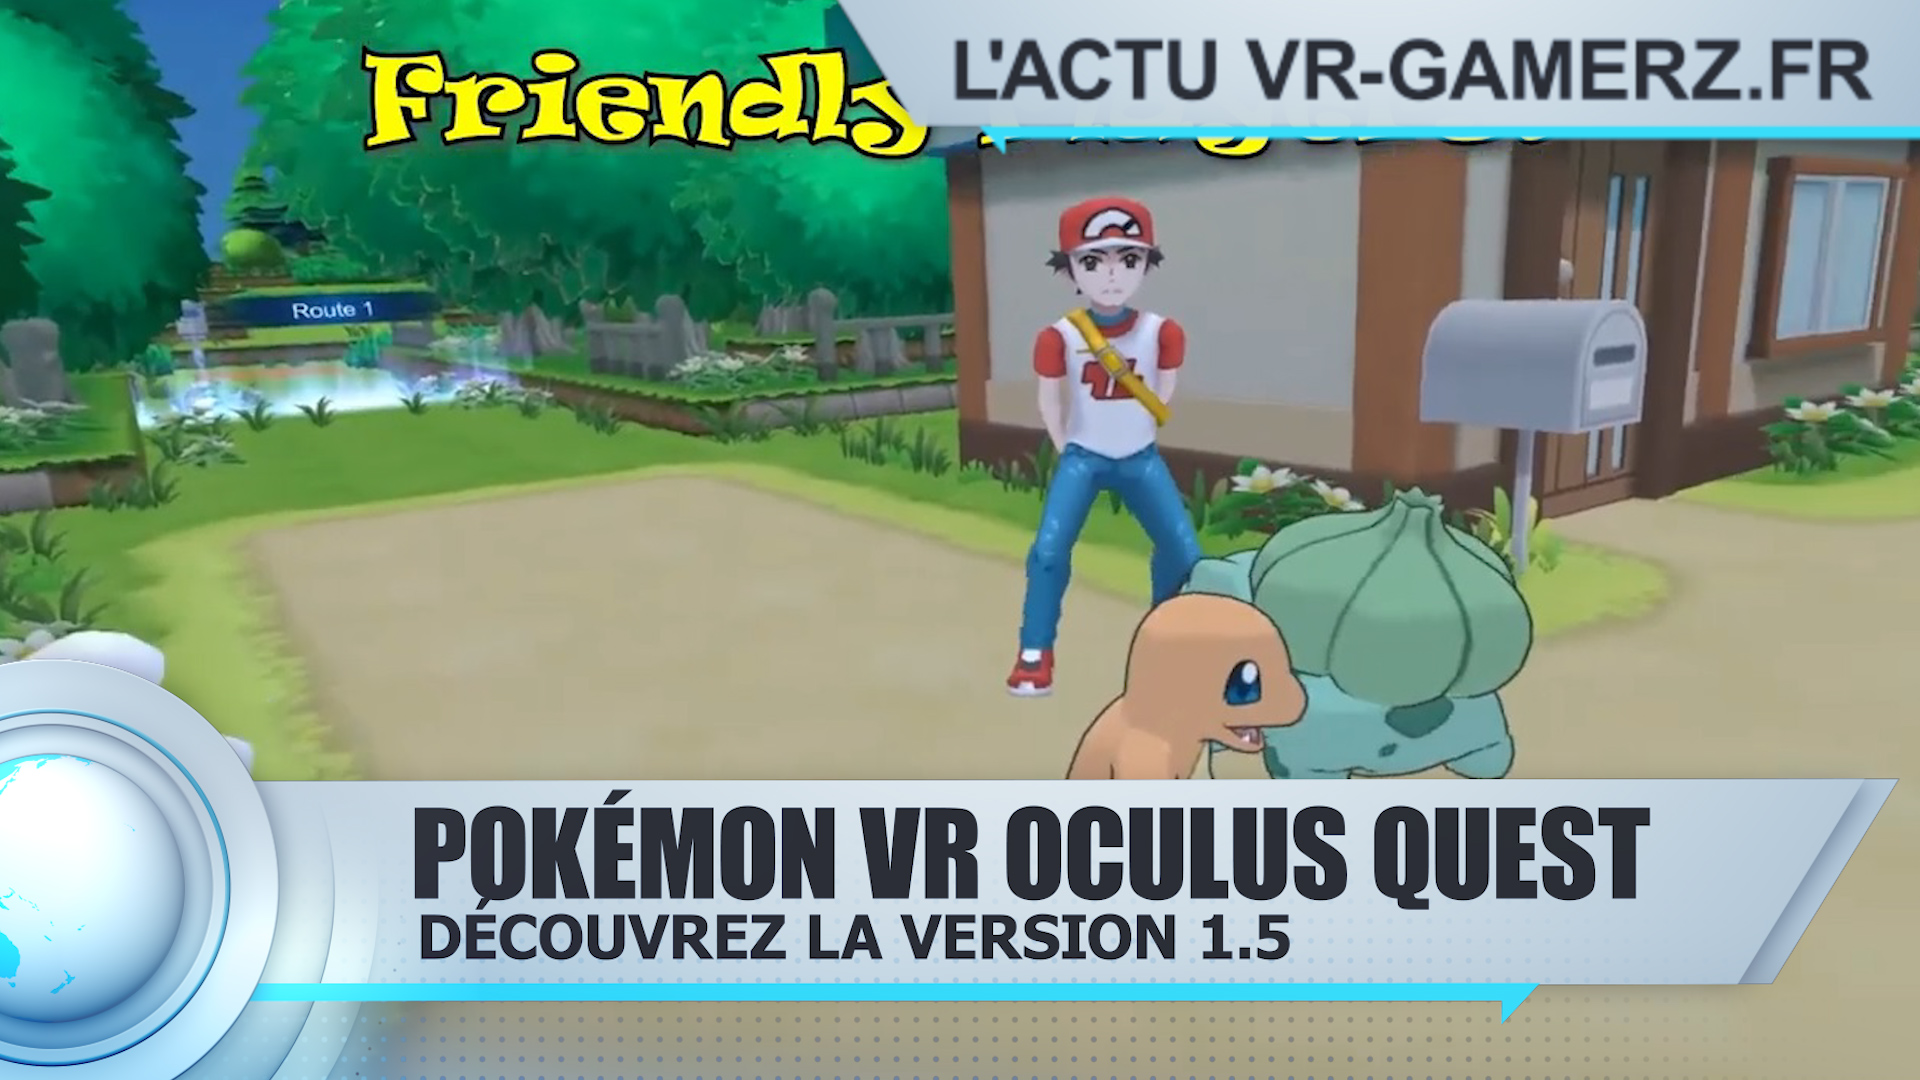 Pokemon VR Oculus quest continue de s’améliorer : Découvrez les changements !